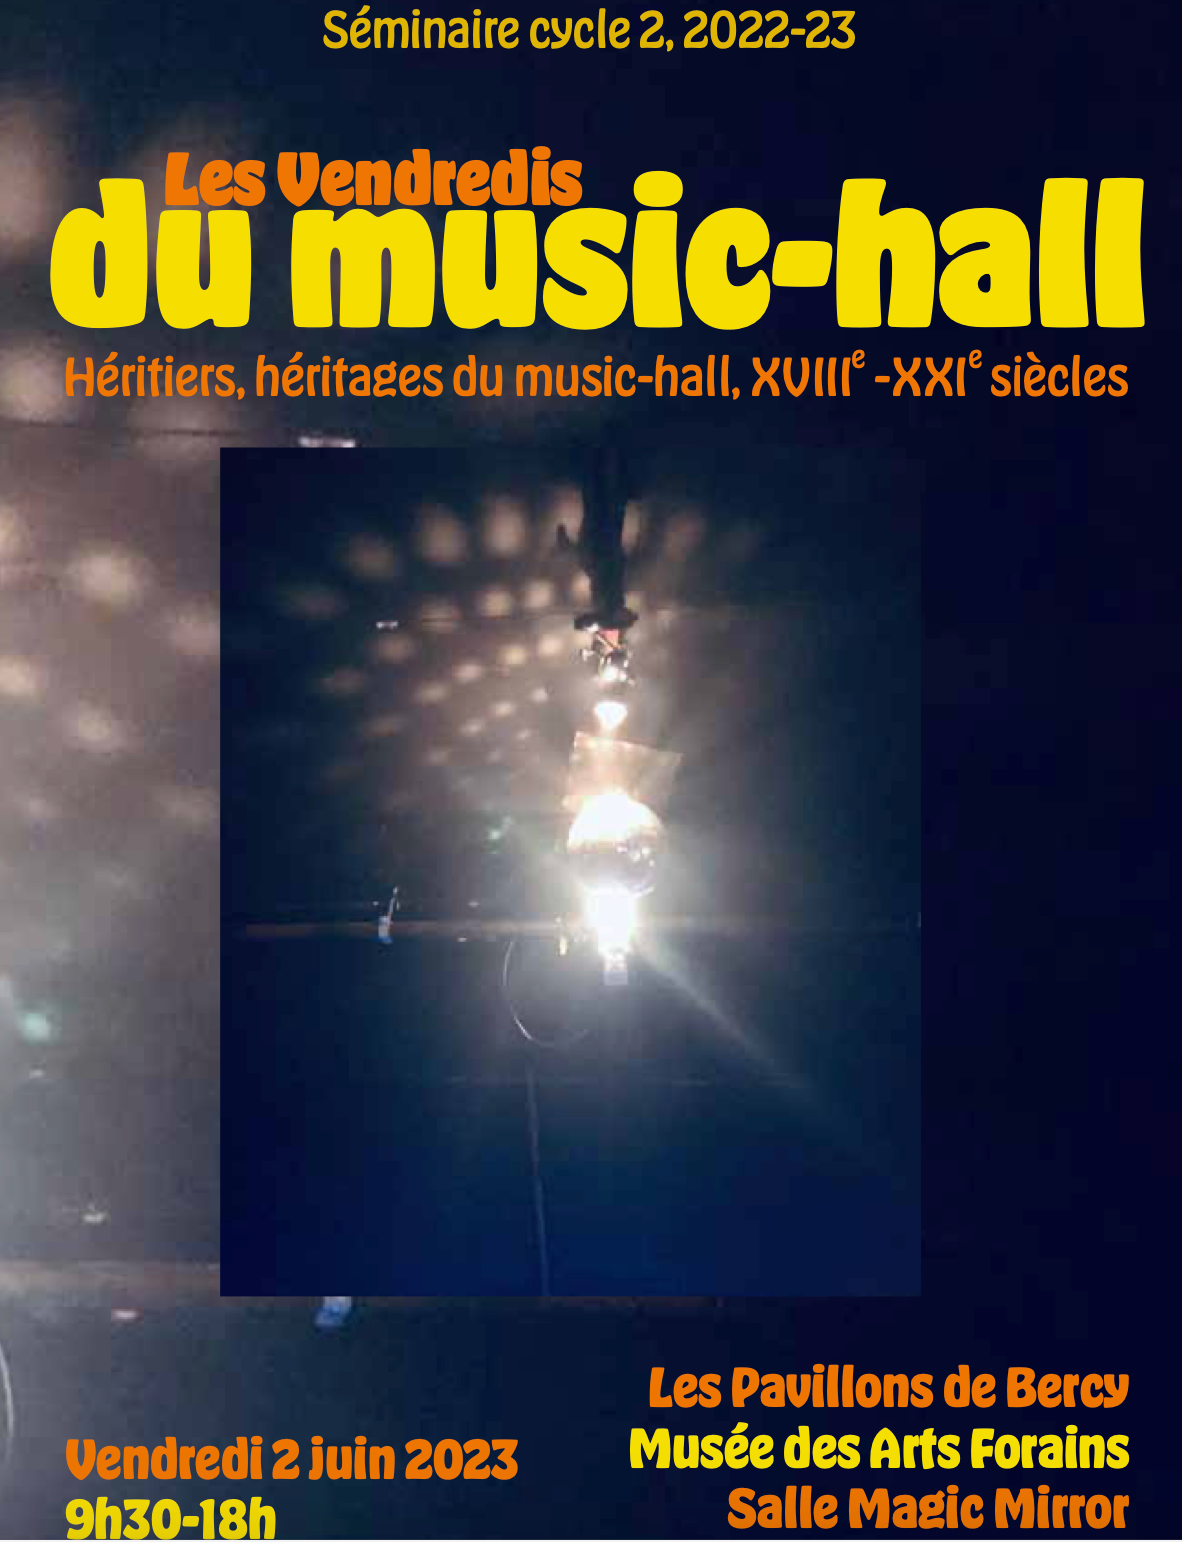 Les Vendredis du music-hall. Héritiers, héritages du music-hall (XVIIIe-XXIe siècles) (Paris)